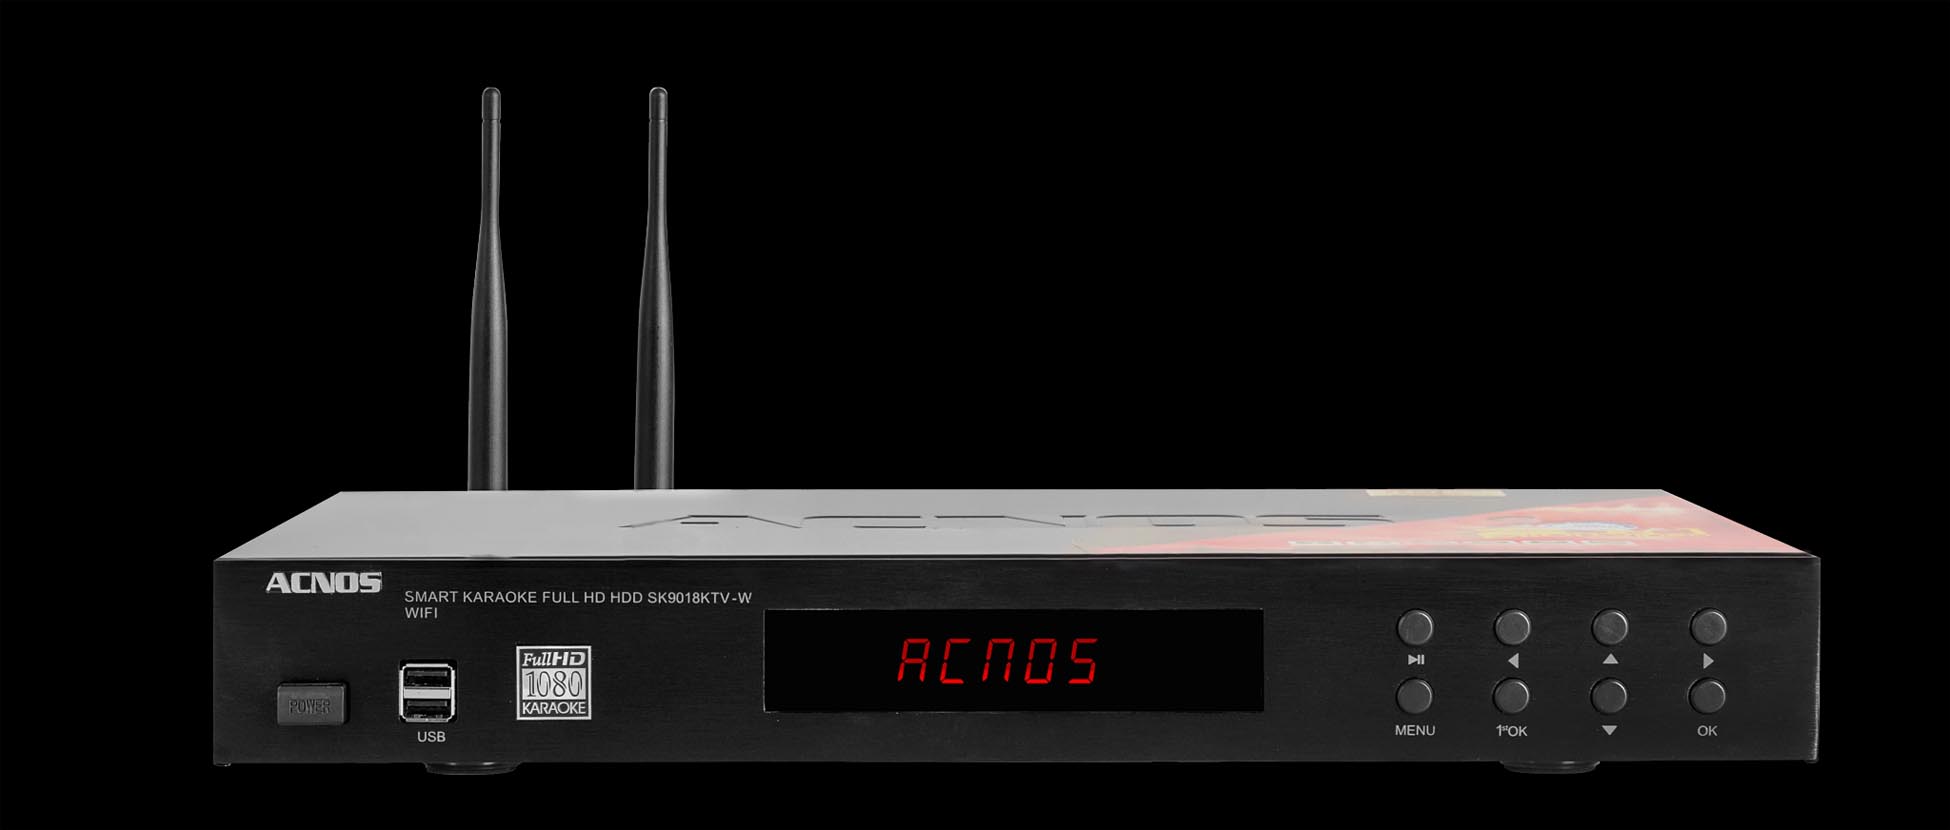 Đầu Karaoke Acnos SK9018KTV-W + Tặng kèm USB 16G đã chép nhạc